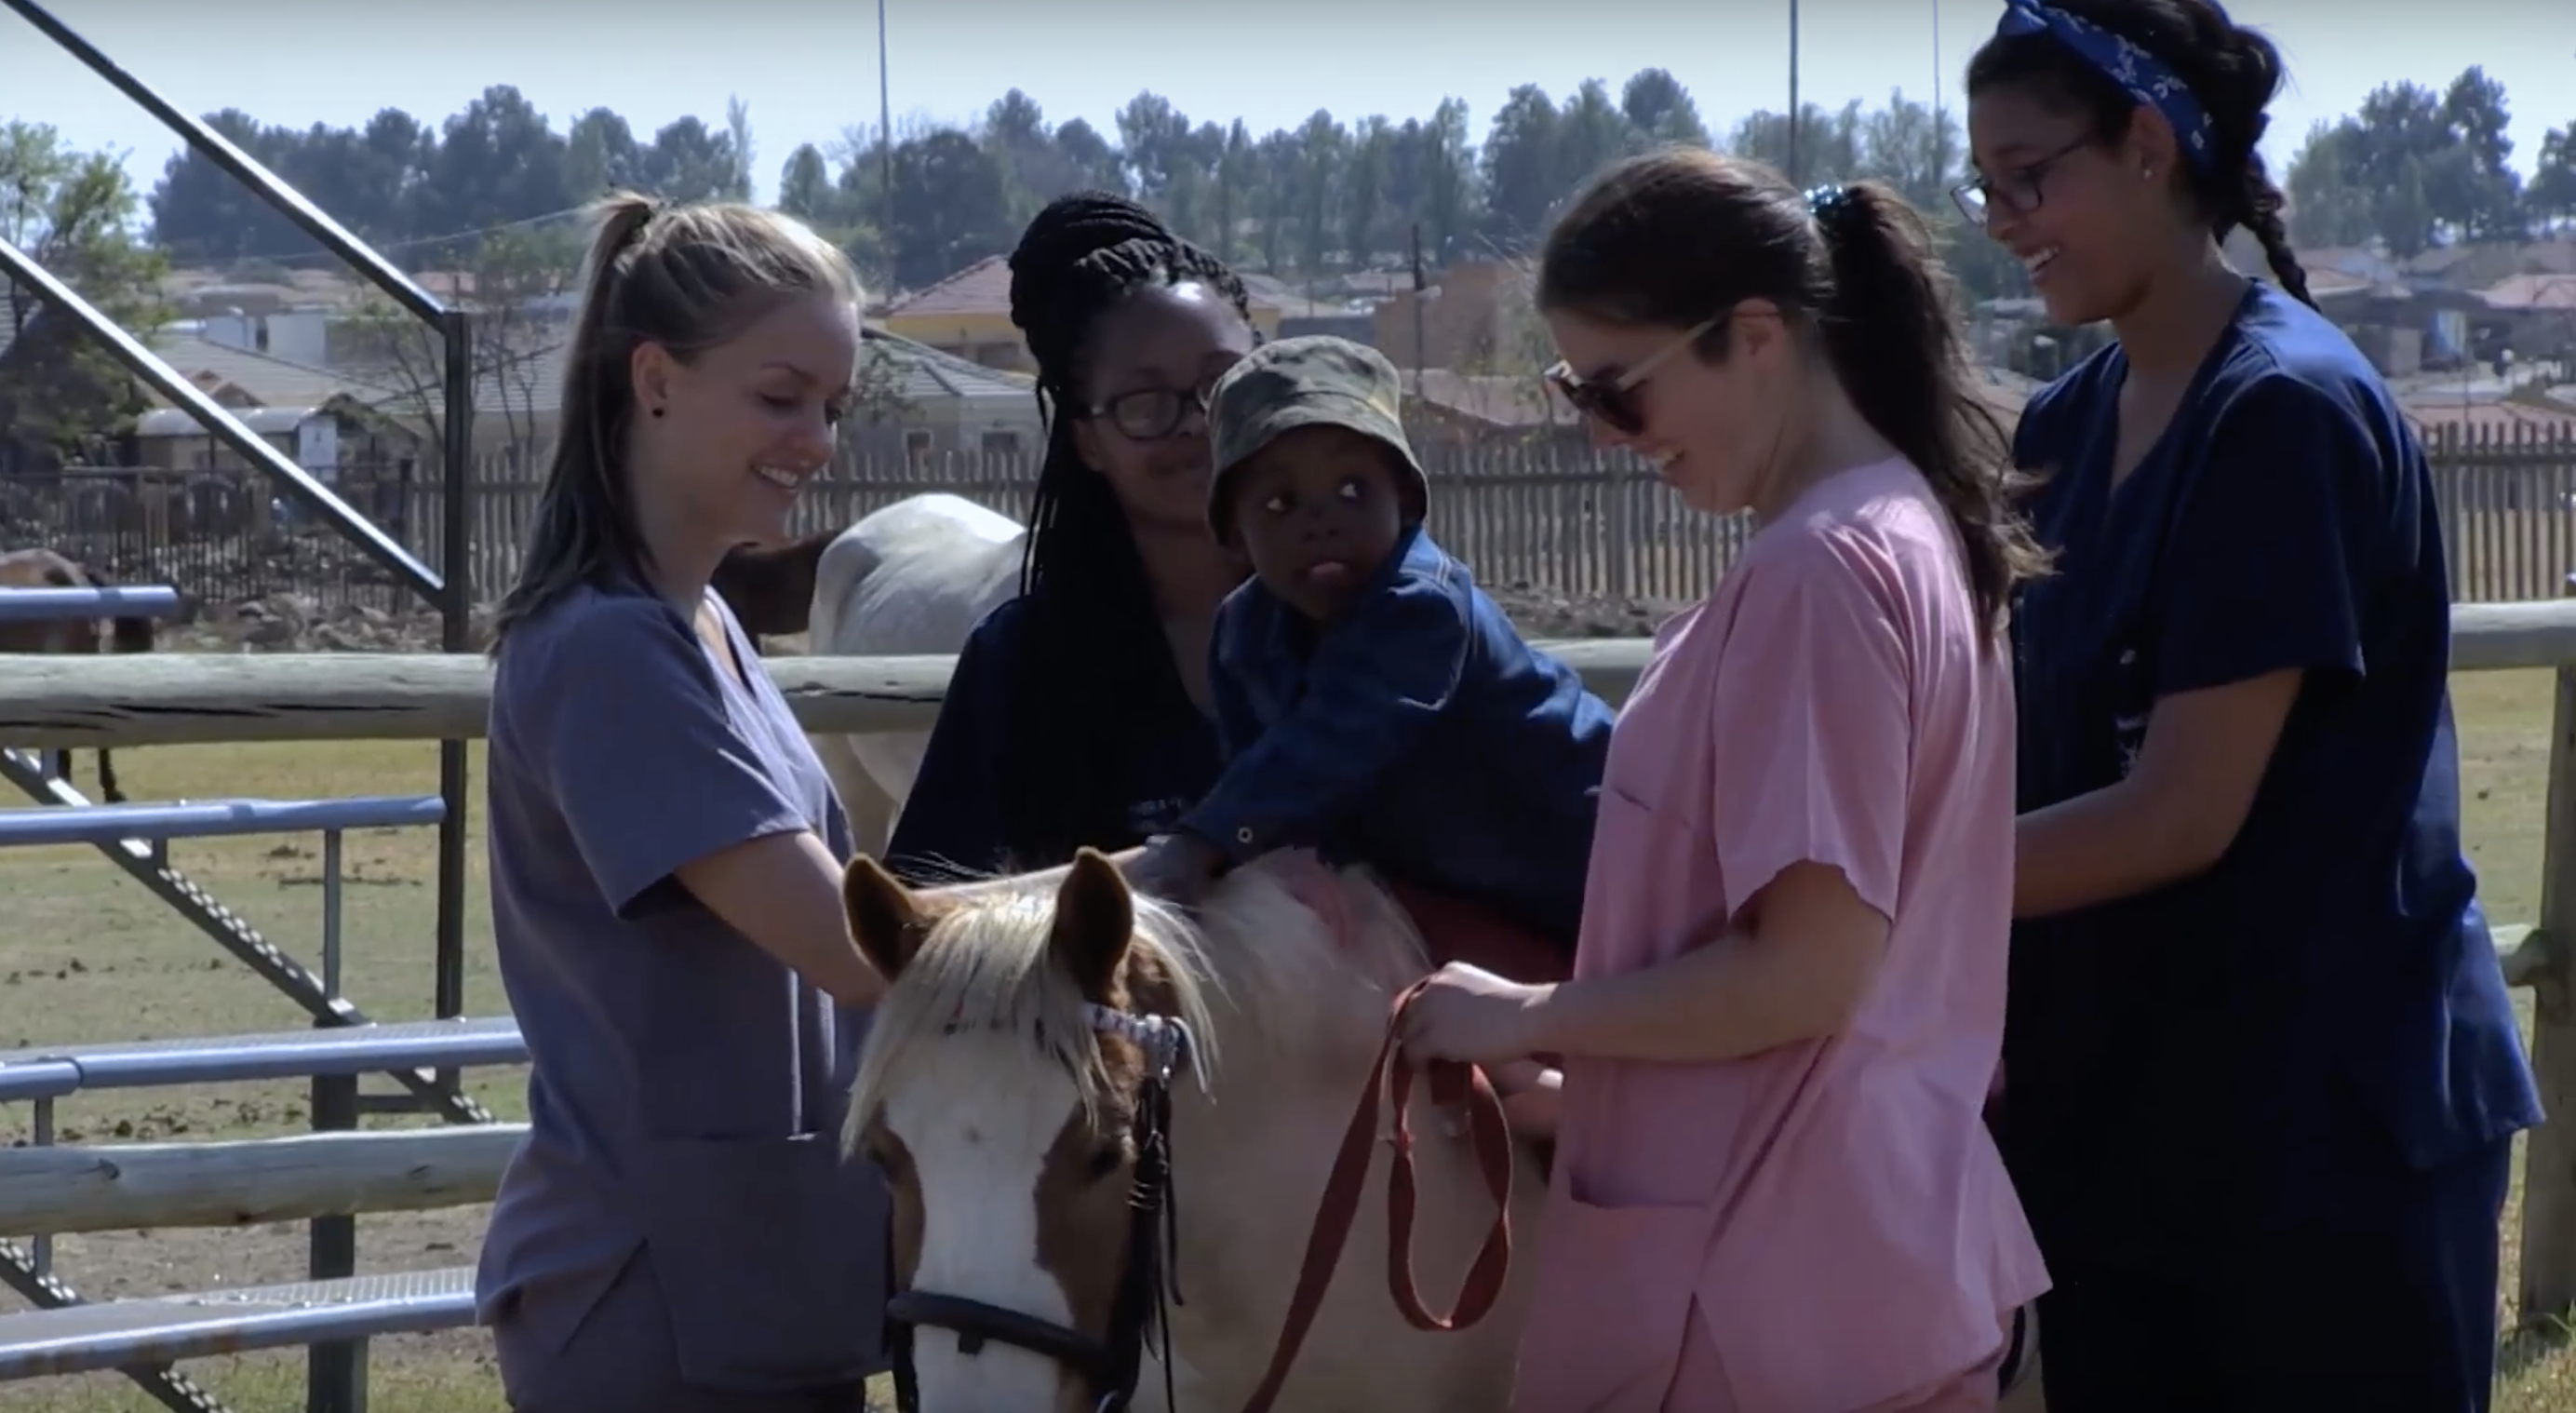 Mafokate uses horses to change children’s lives